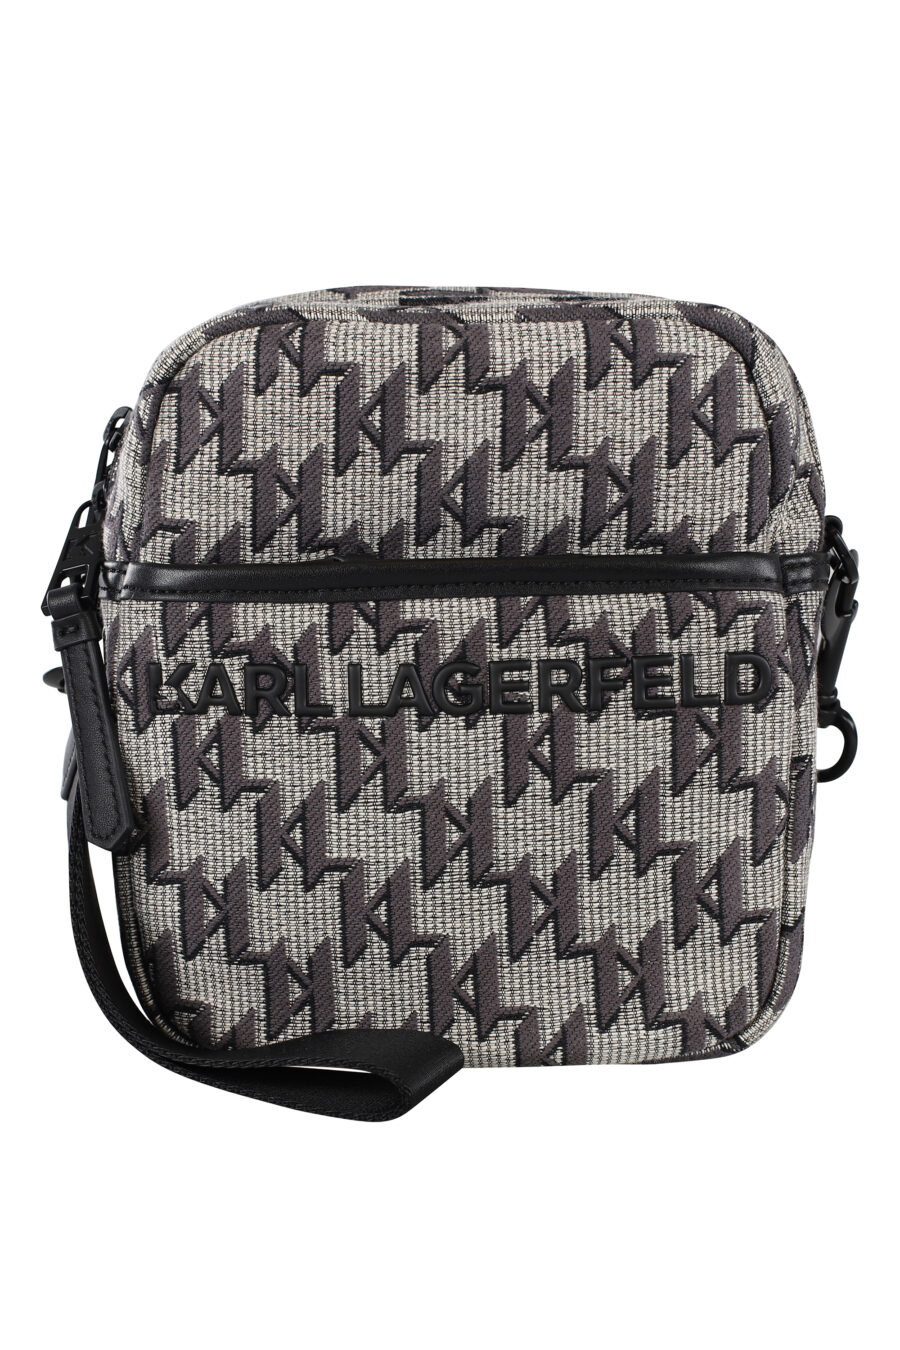 Shoulder bag with monogram logo - IMG 6927